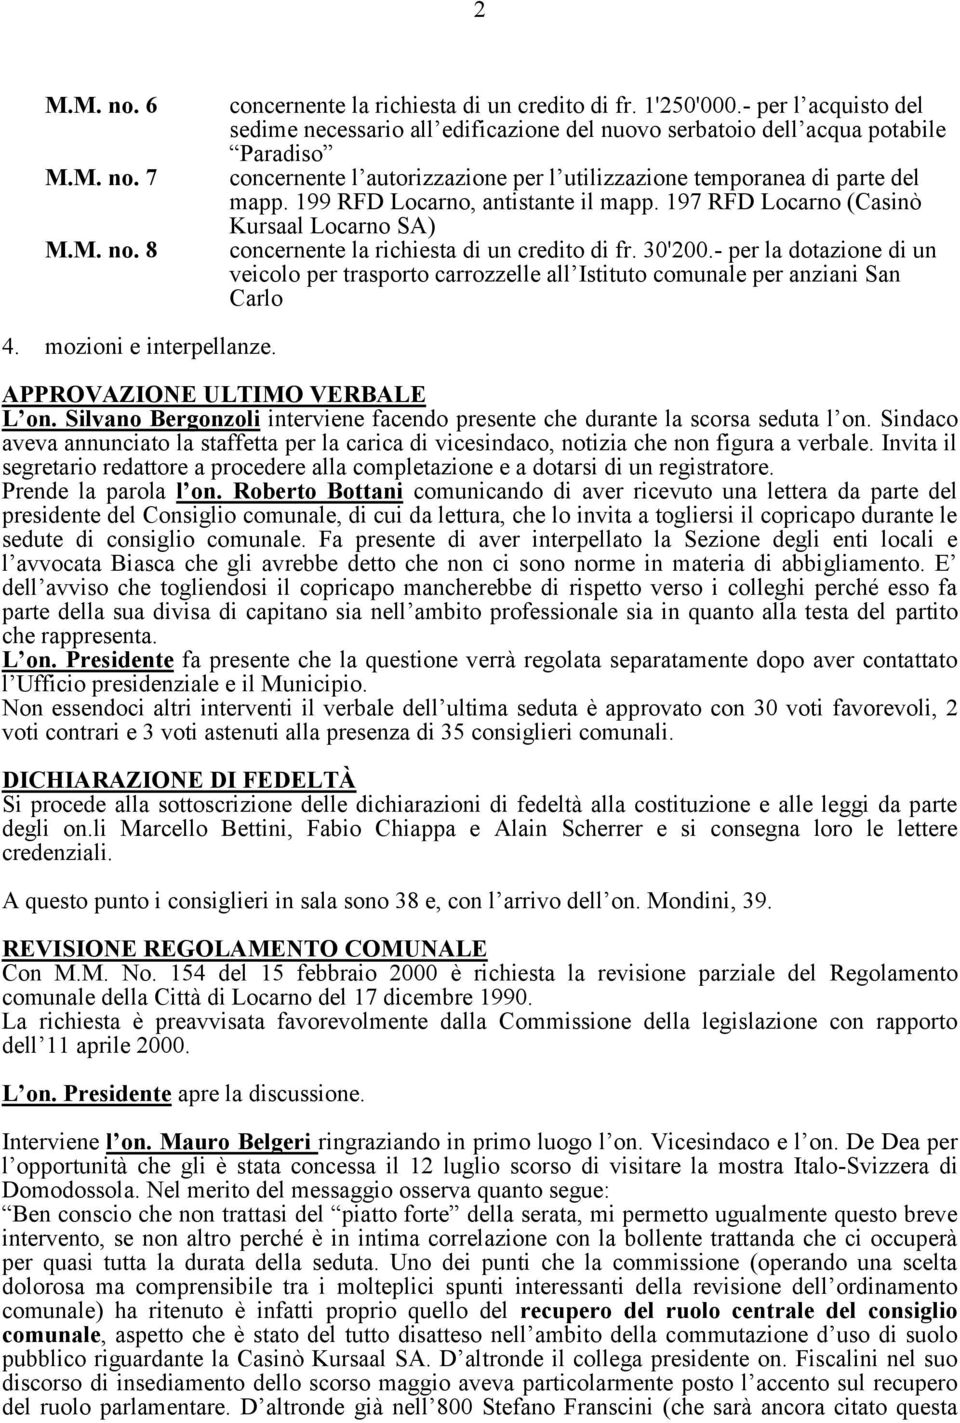 199 RFD Locarno, antistante il mapp. 197 RFD Locarno (Casinò Kursaal Locarno SA) concernente la richiesta di un credito di fr. 30'200.